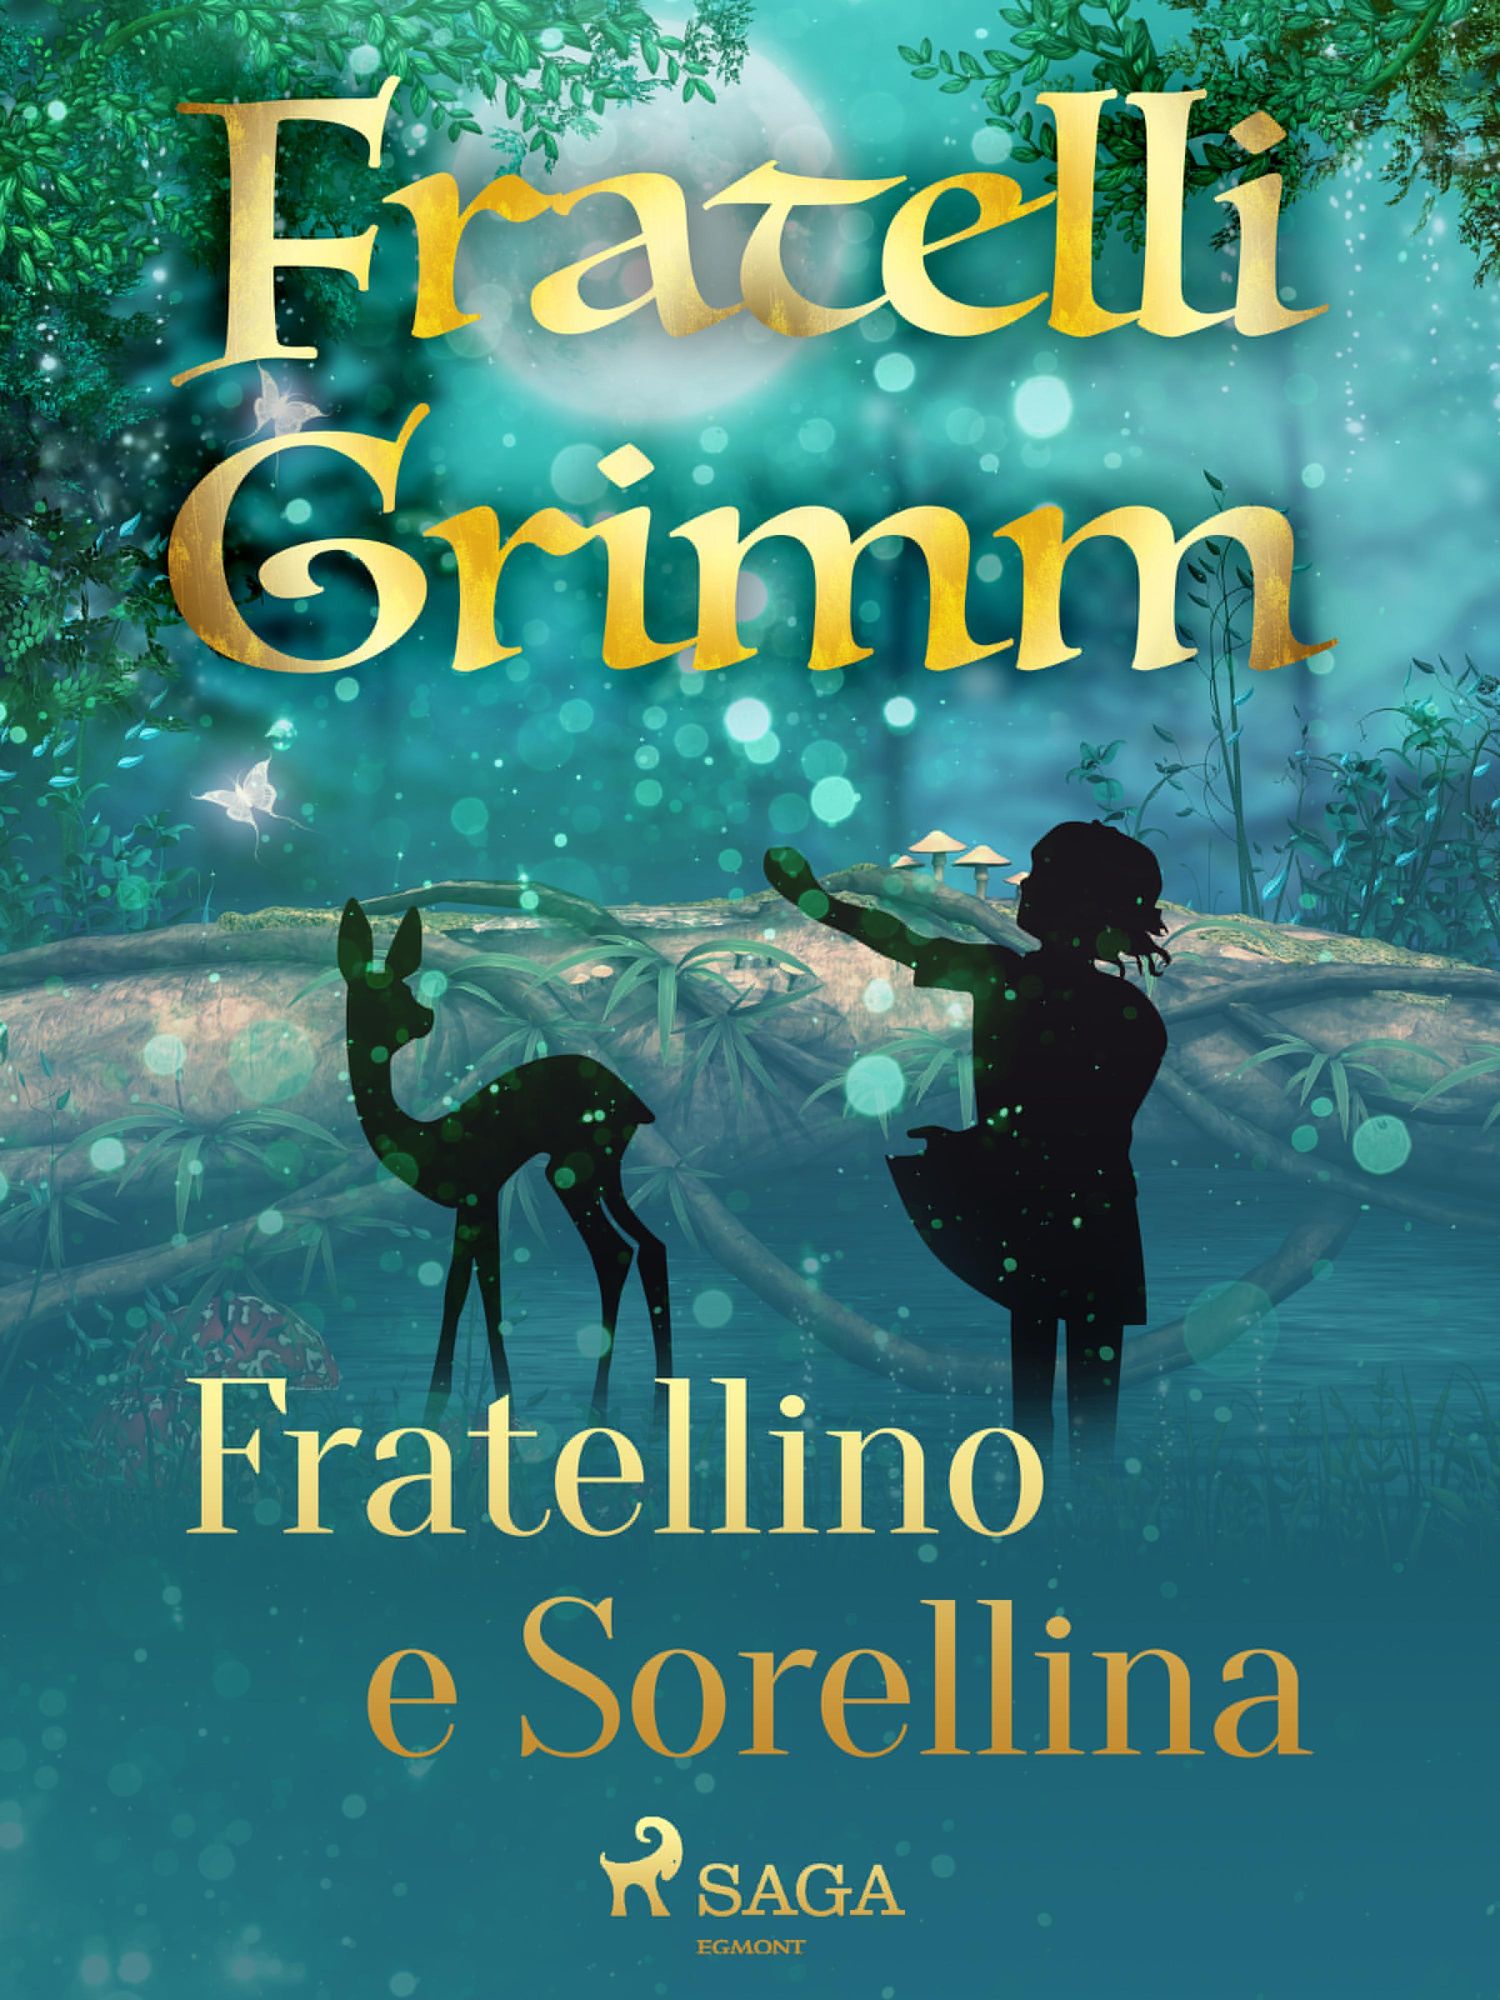 Fratellino e sorellina' von 'Brothers Grimm' - eBook